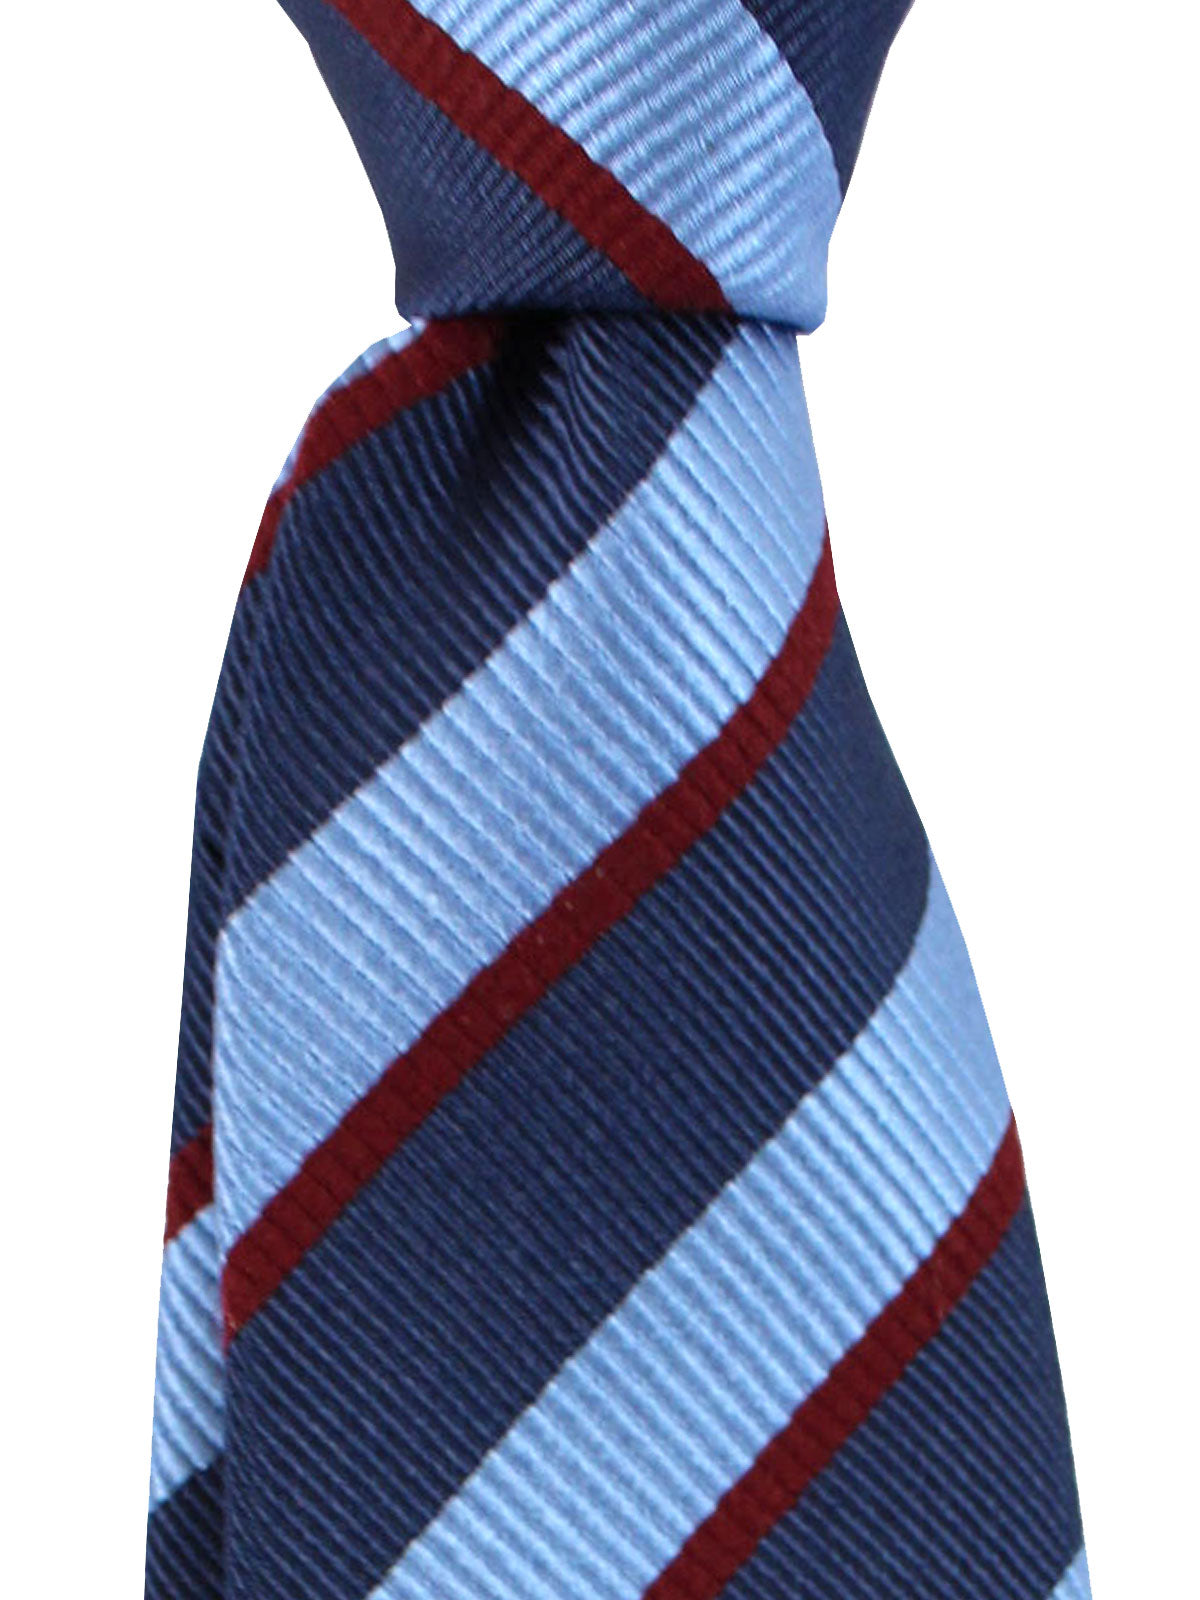 Gucci Silk Tie Navy Blue Maroon Stripes Design - Narrow Necktie